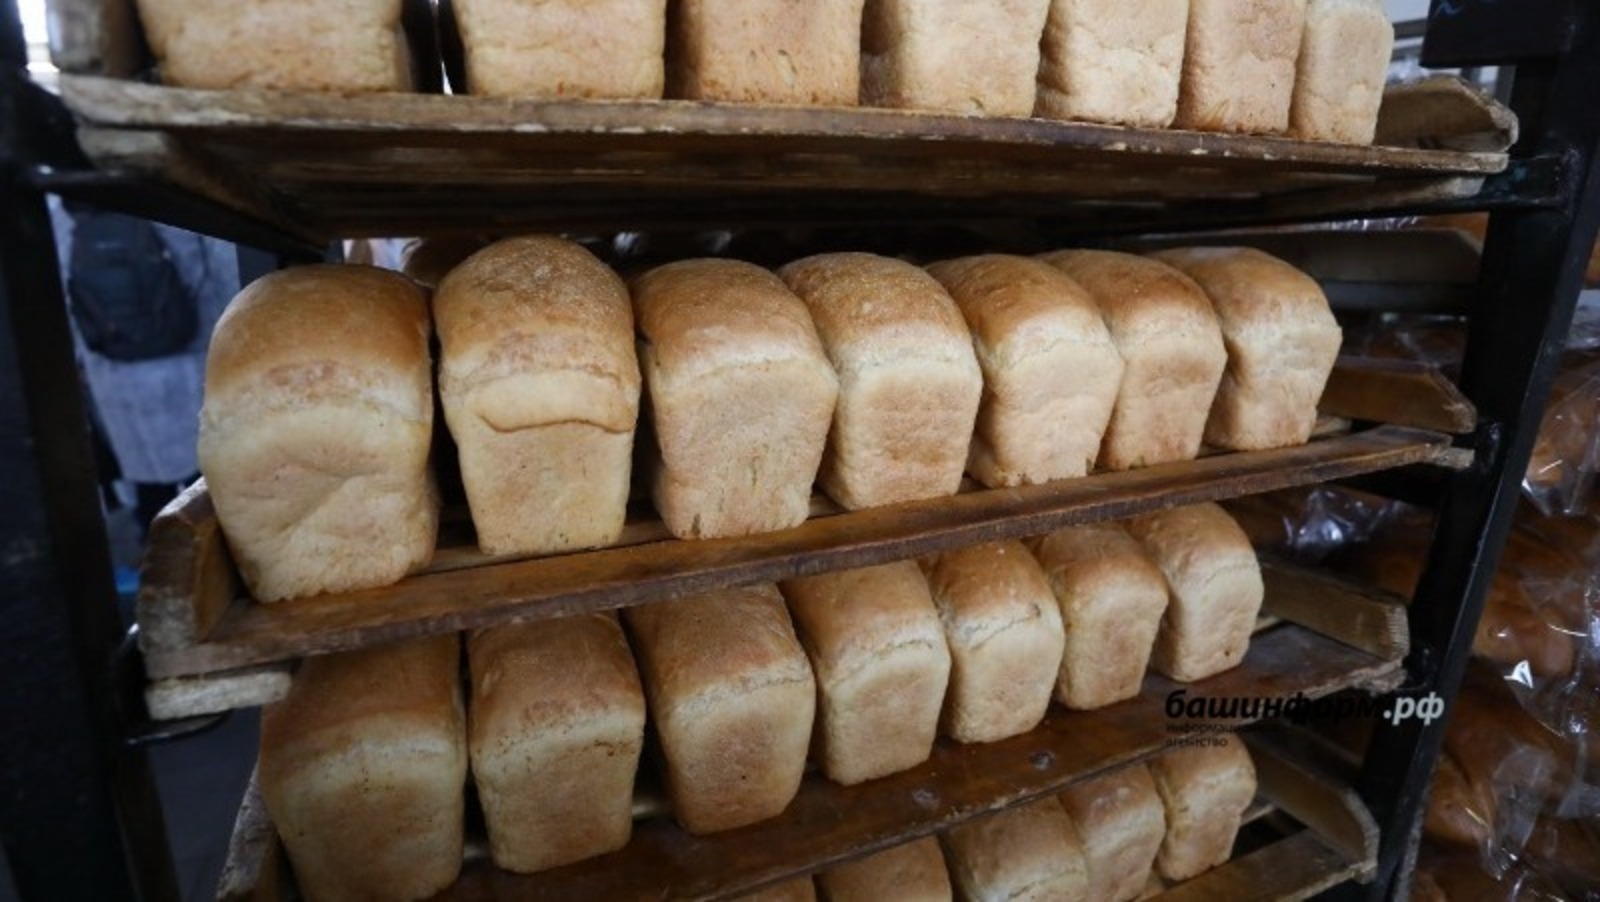 Хлеба в Башкирии достаточно и он не подорожает - Фазрахманов